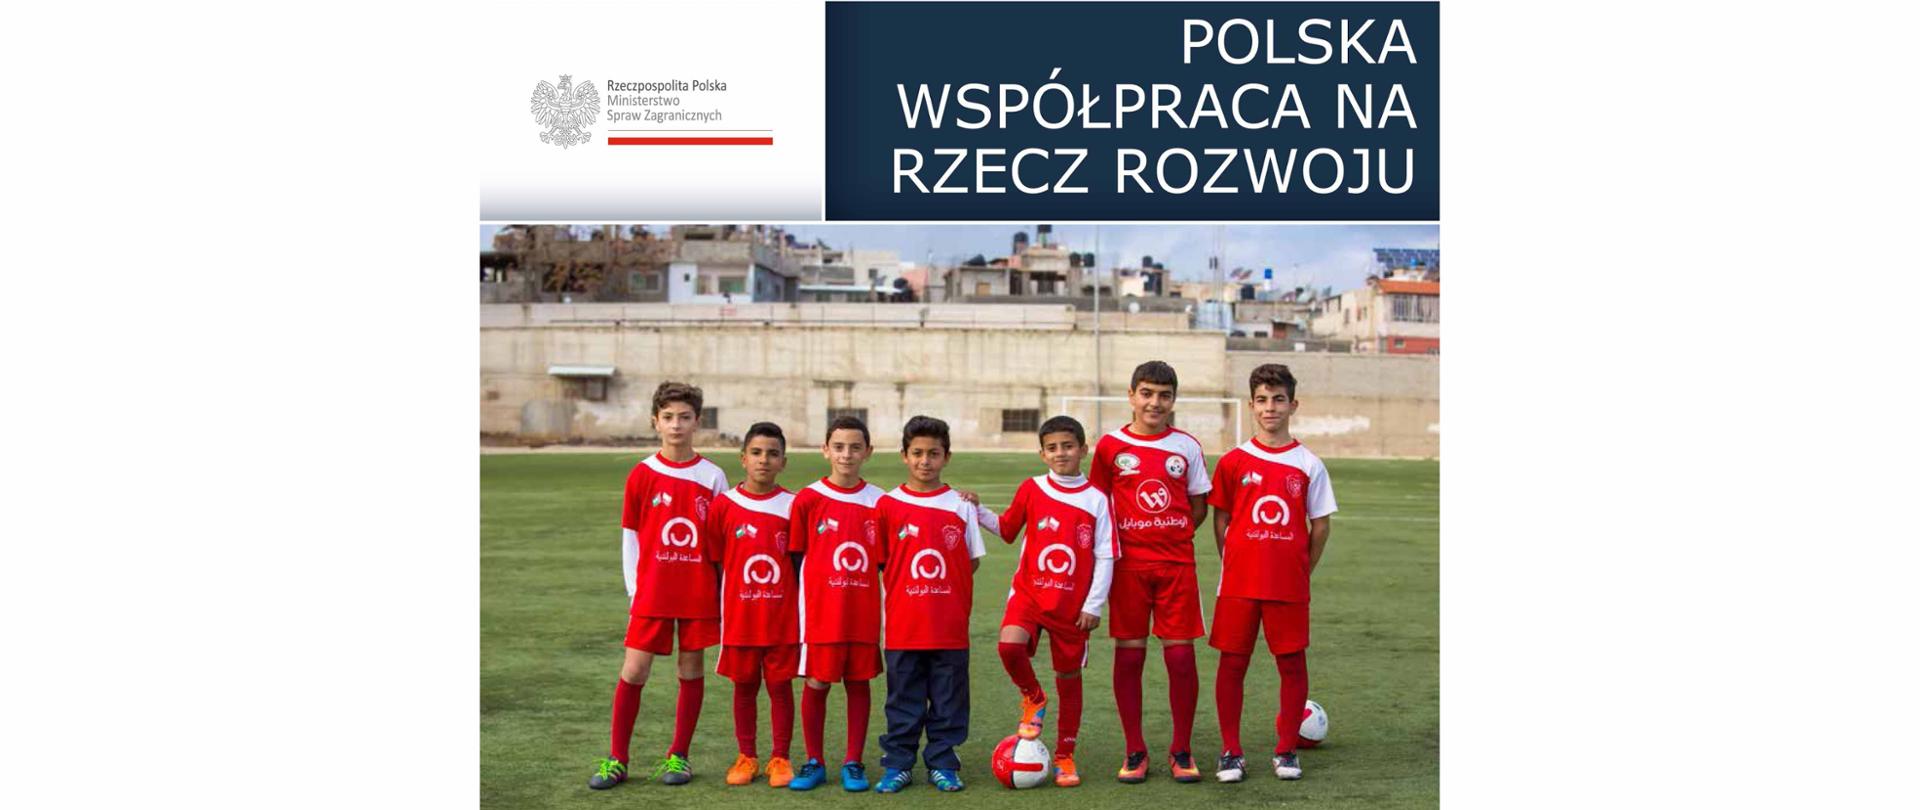 Polska współpraca rozwojowa - Raport roczny 2017 - grupa chłopców ubranych w stroje sportowe stoi na boisku do gry w piłkę